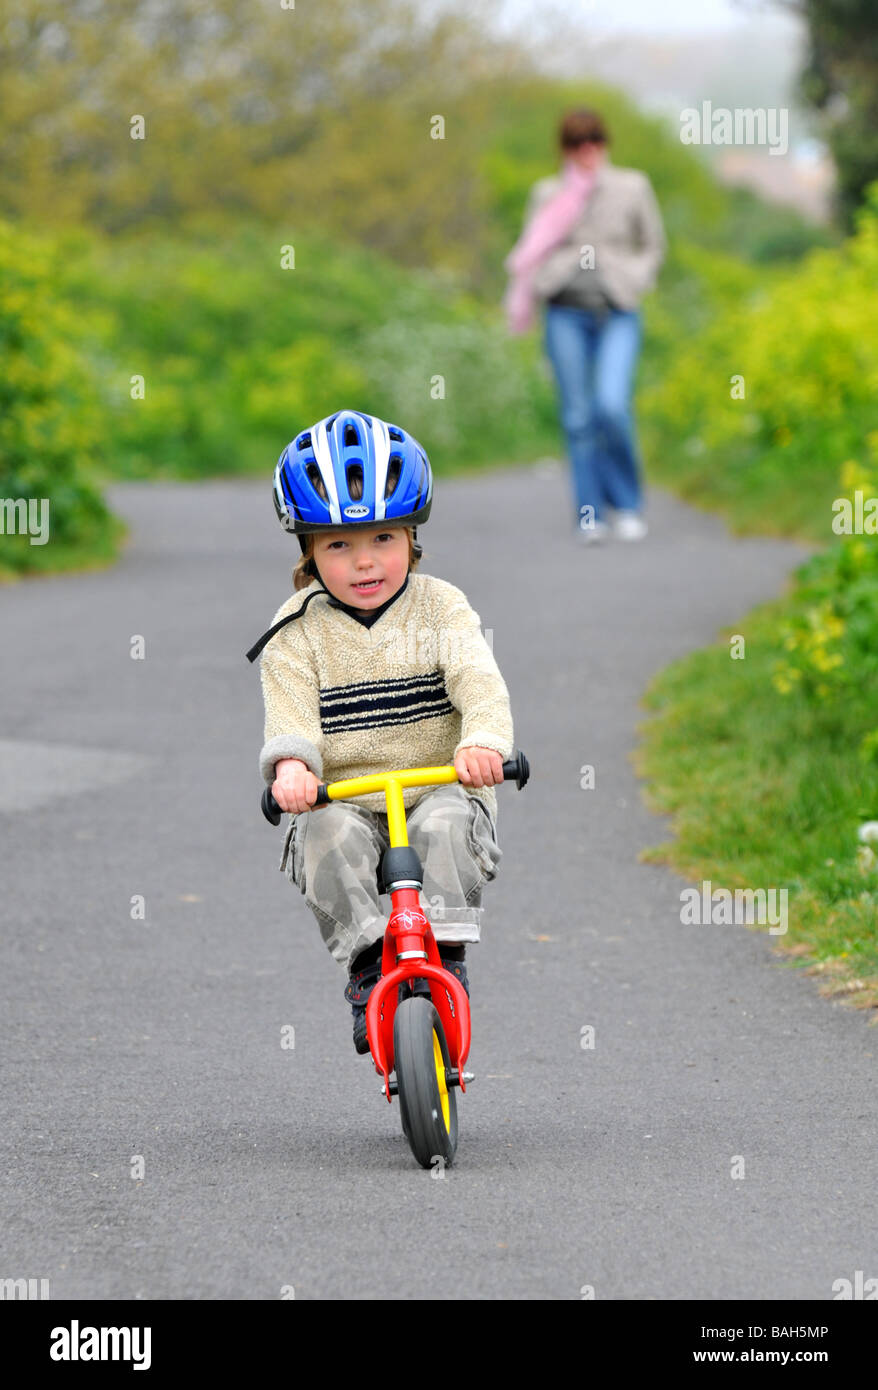 Junge mit dem Balance-Fahrrad fahren lernen Stockfoto